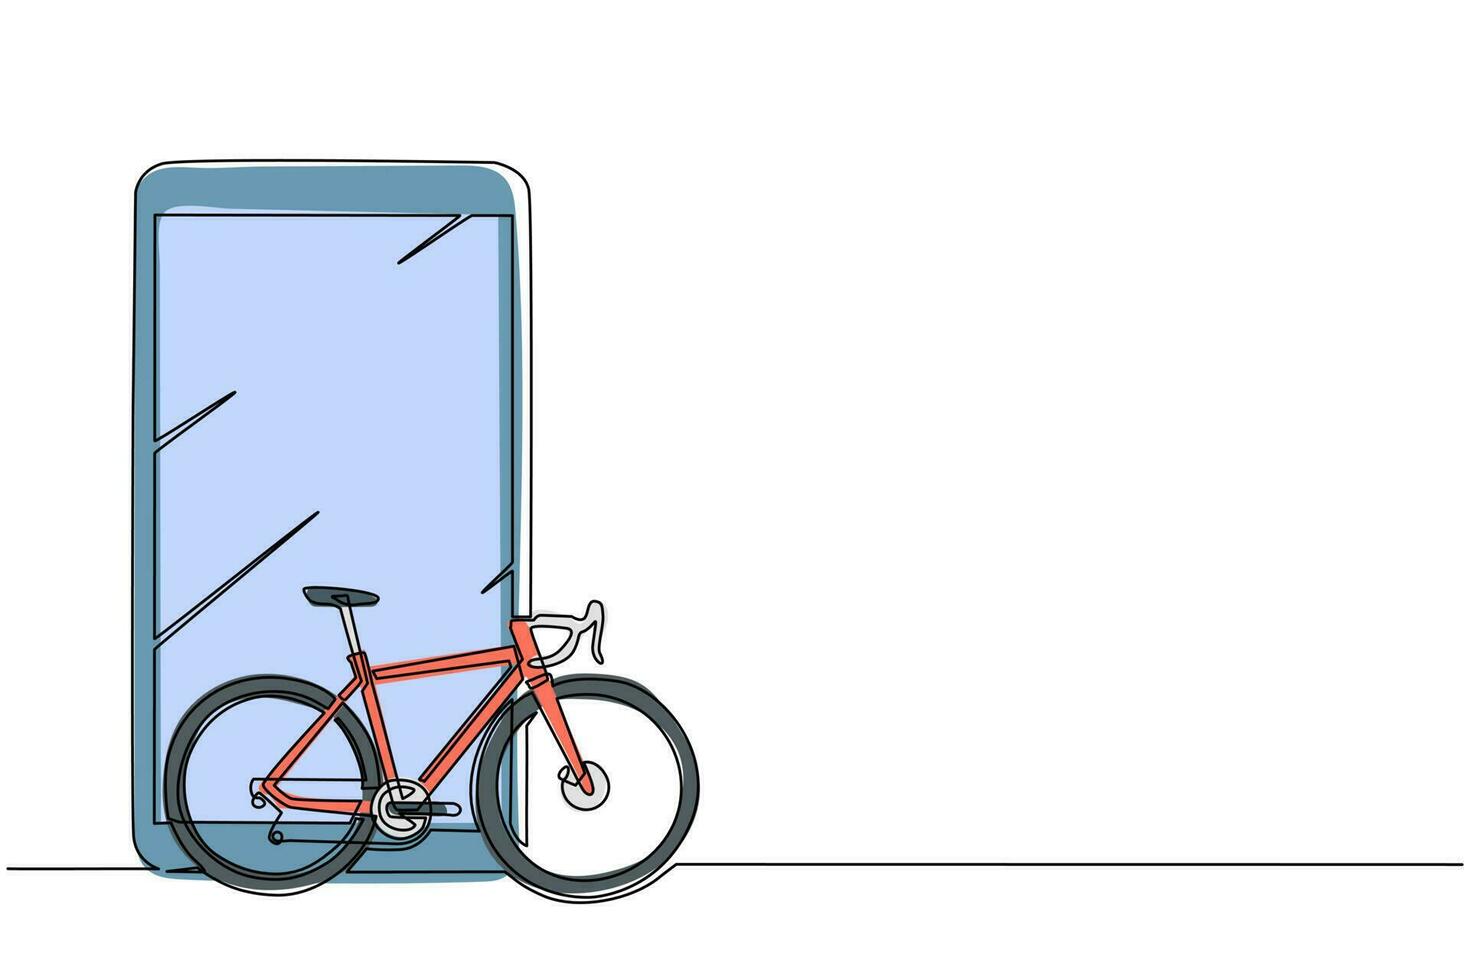 teléfono inteligente de dibujo de una sola línea y bicicleta de carretera. vehículo ecológico, icono monocromo de bicicleta deportiva. atributo de viaje de la ciudad de velocidad, símbolo de hobby ciclista. vector gráfico de diseño de dibujo de línea continua